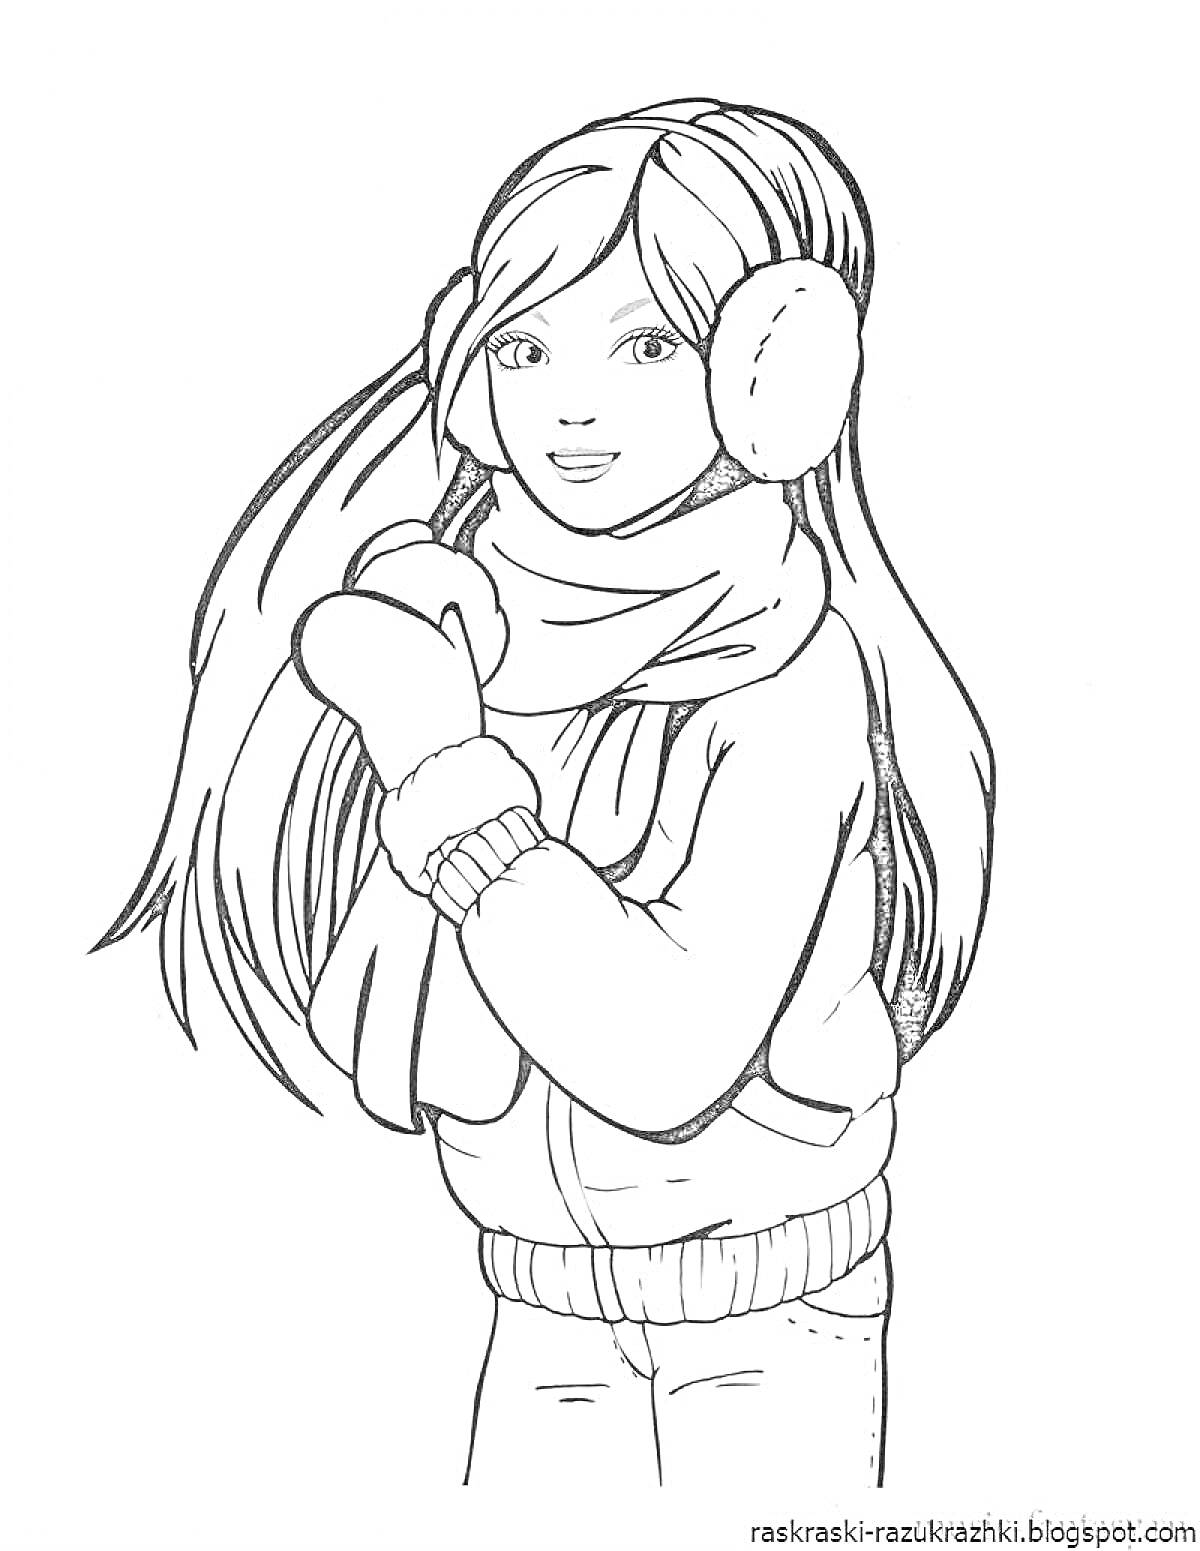 Раскраска Девочка в зимней одежде с длинными волосами, наушниками, шарфом, перчатками и курткой